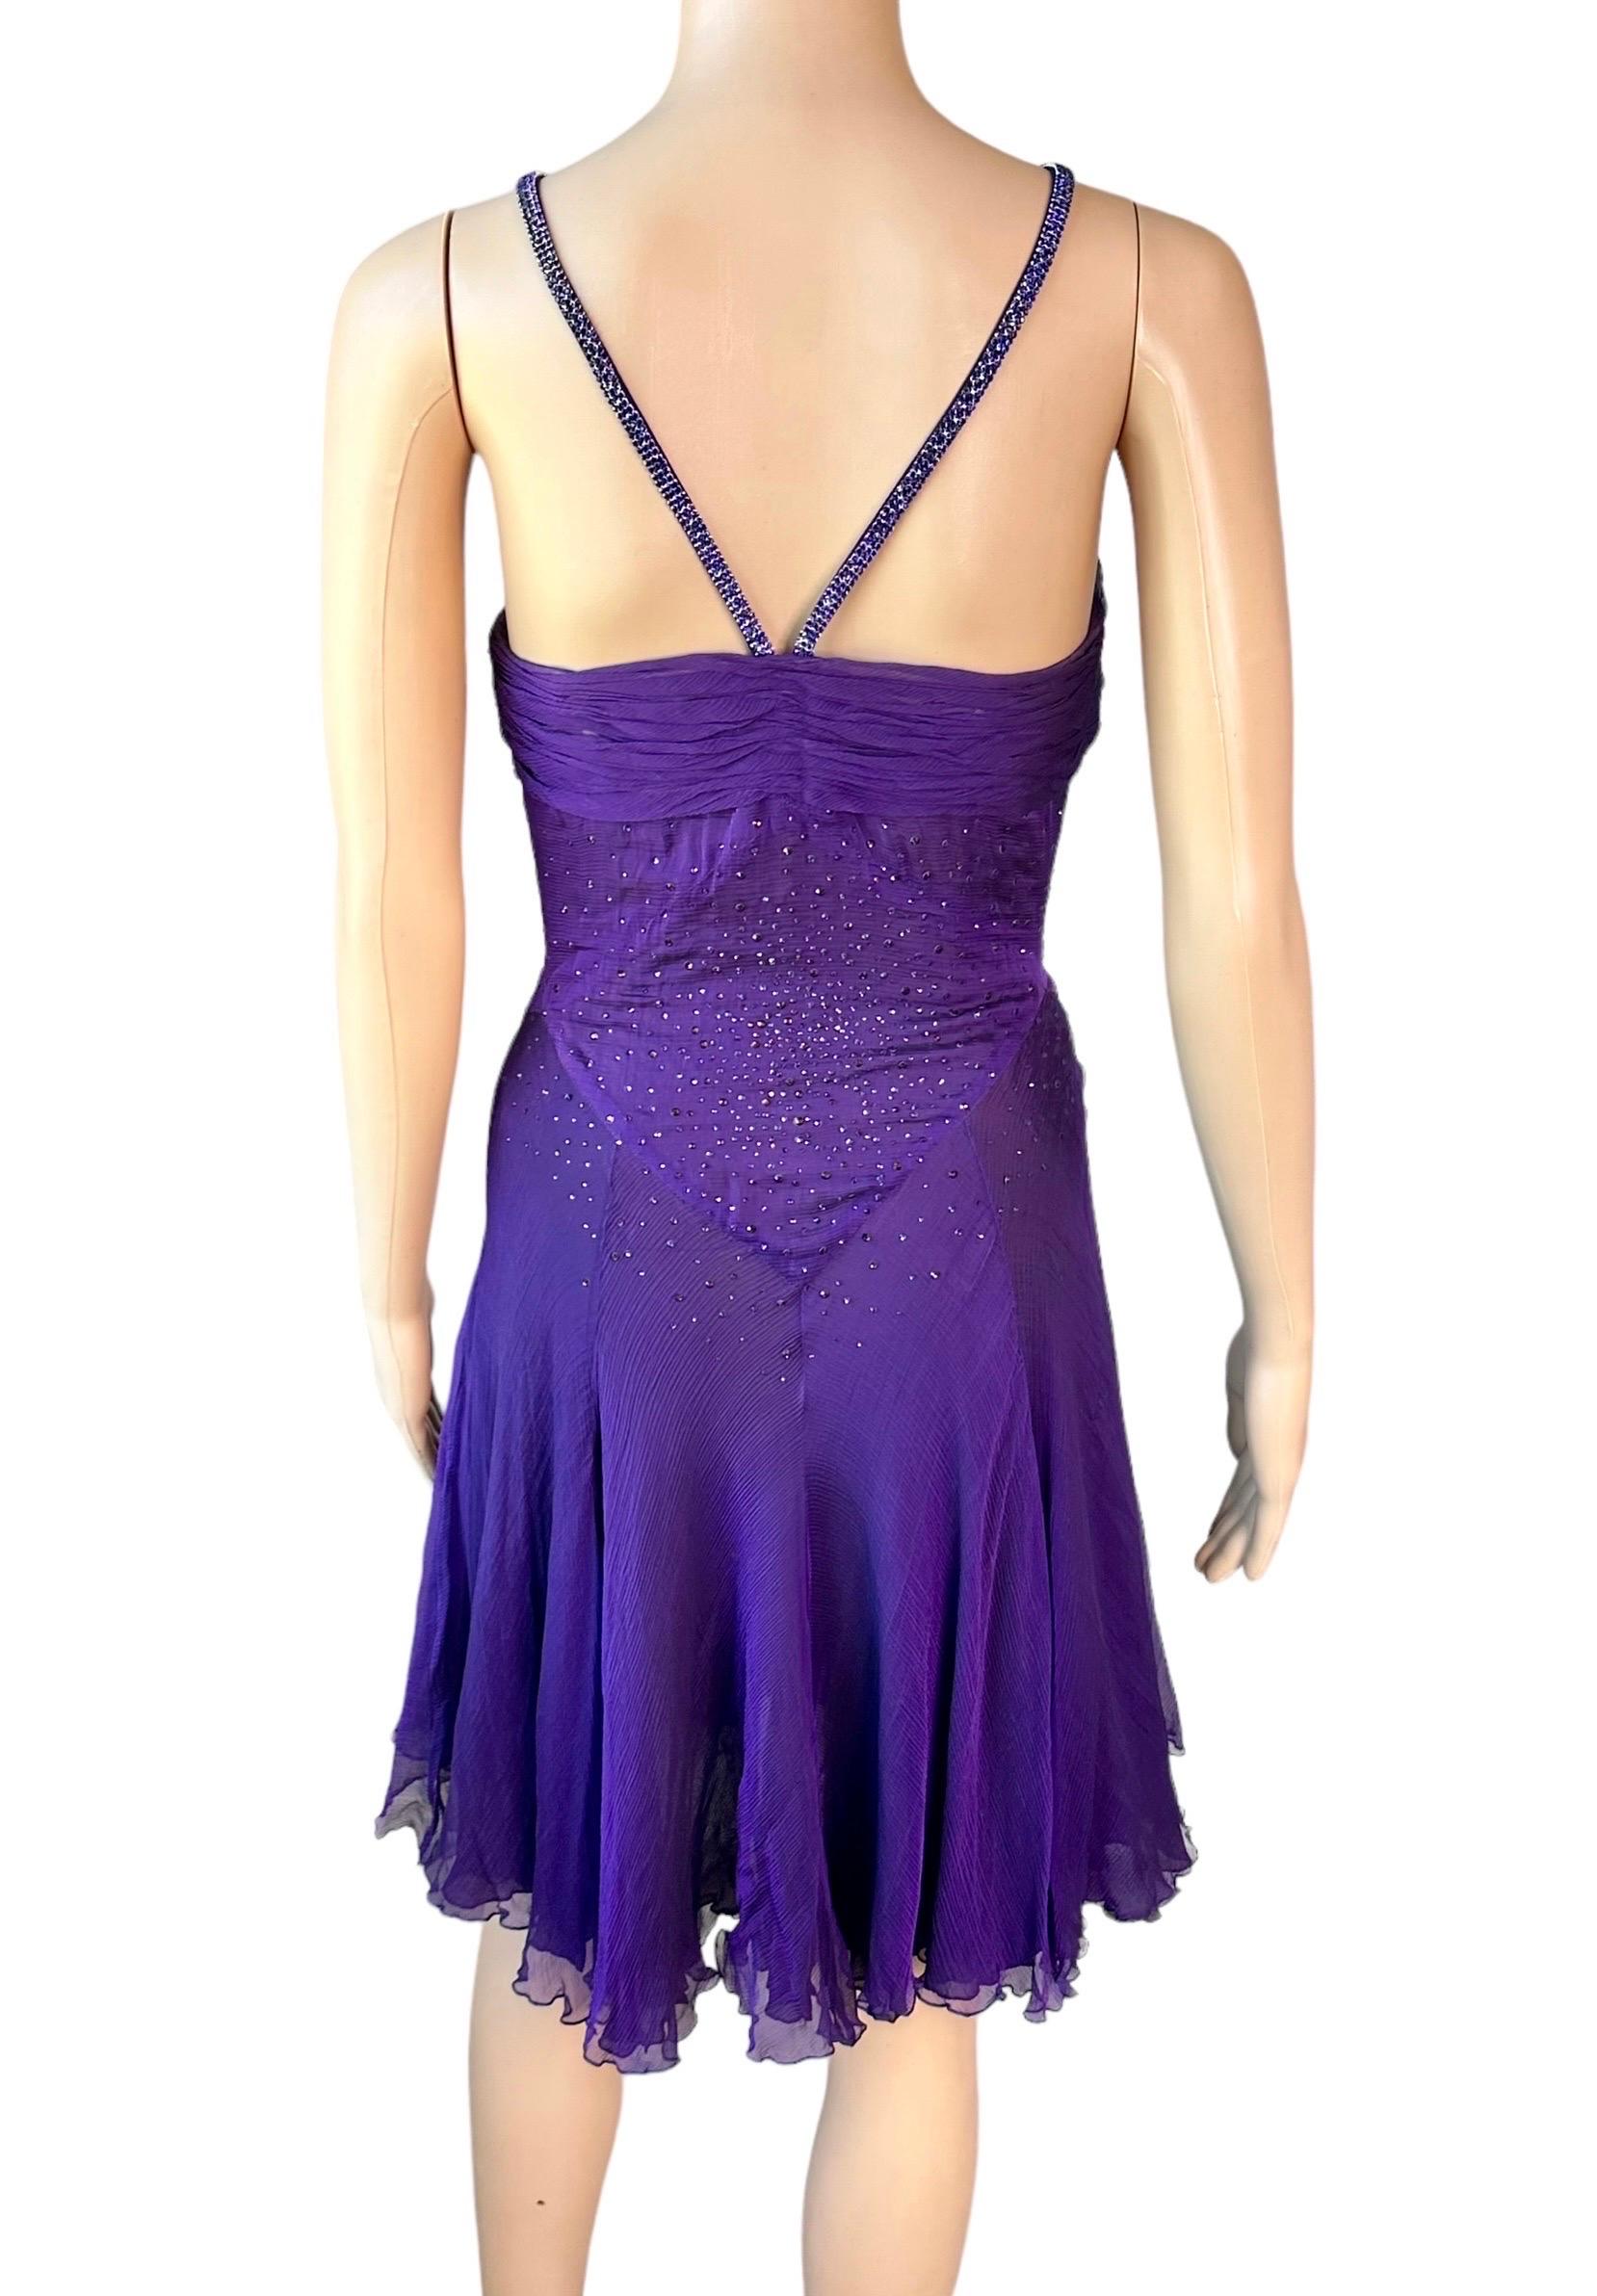 Versace c.2007 Crystal Embellished Plunging Neckline Semi-Sheer Purple Dress For Sale 3